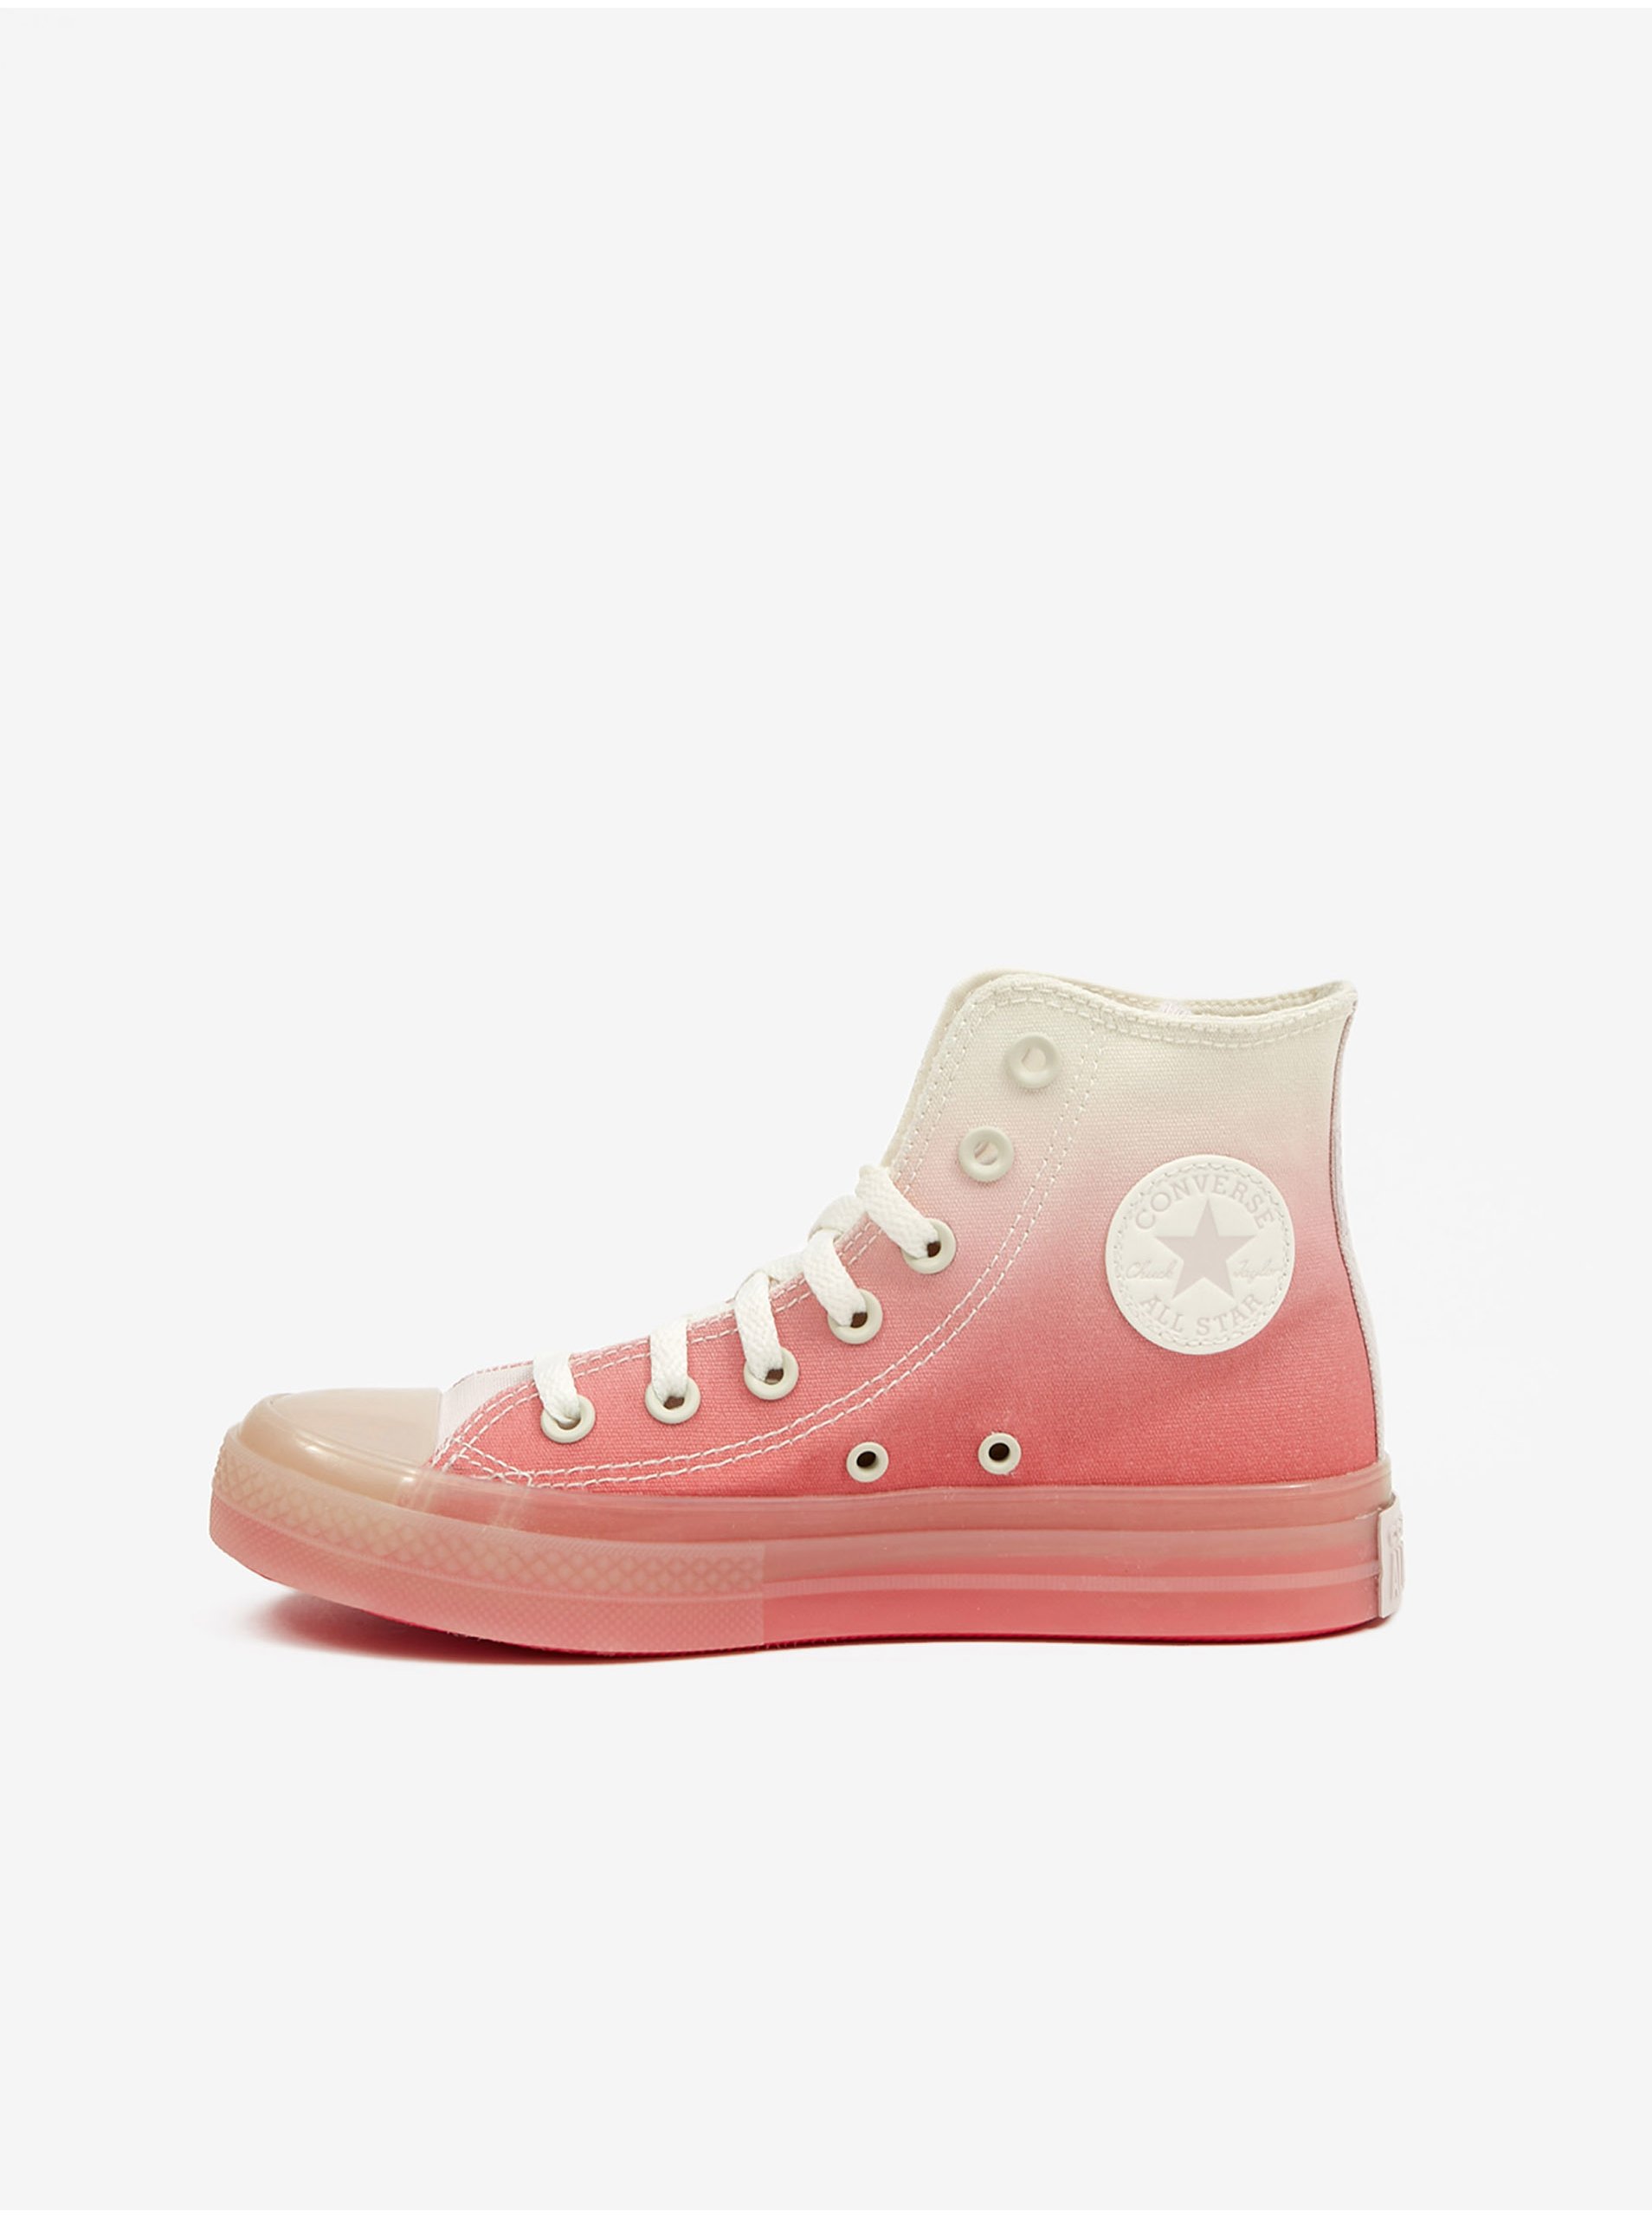 E-shop Krémovo-růžové dámské kotníkové tenisky Converse Chuck Taylor All Star CX